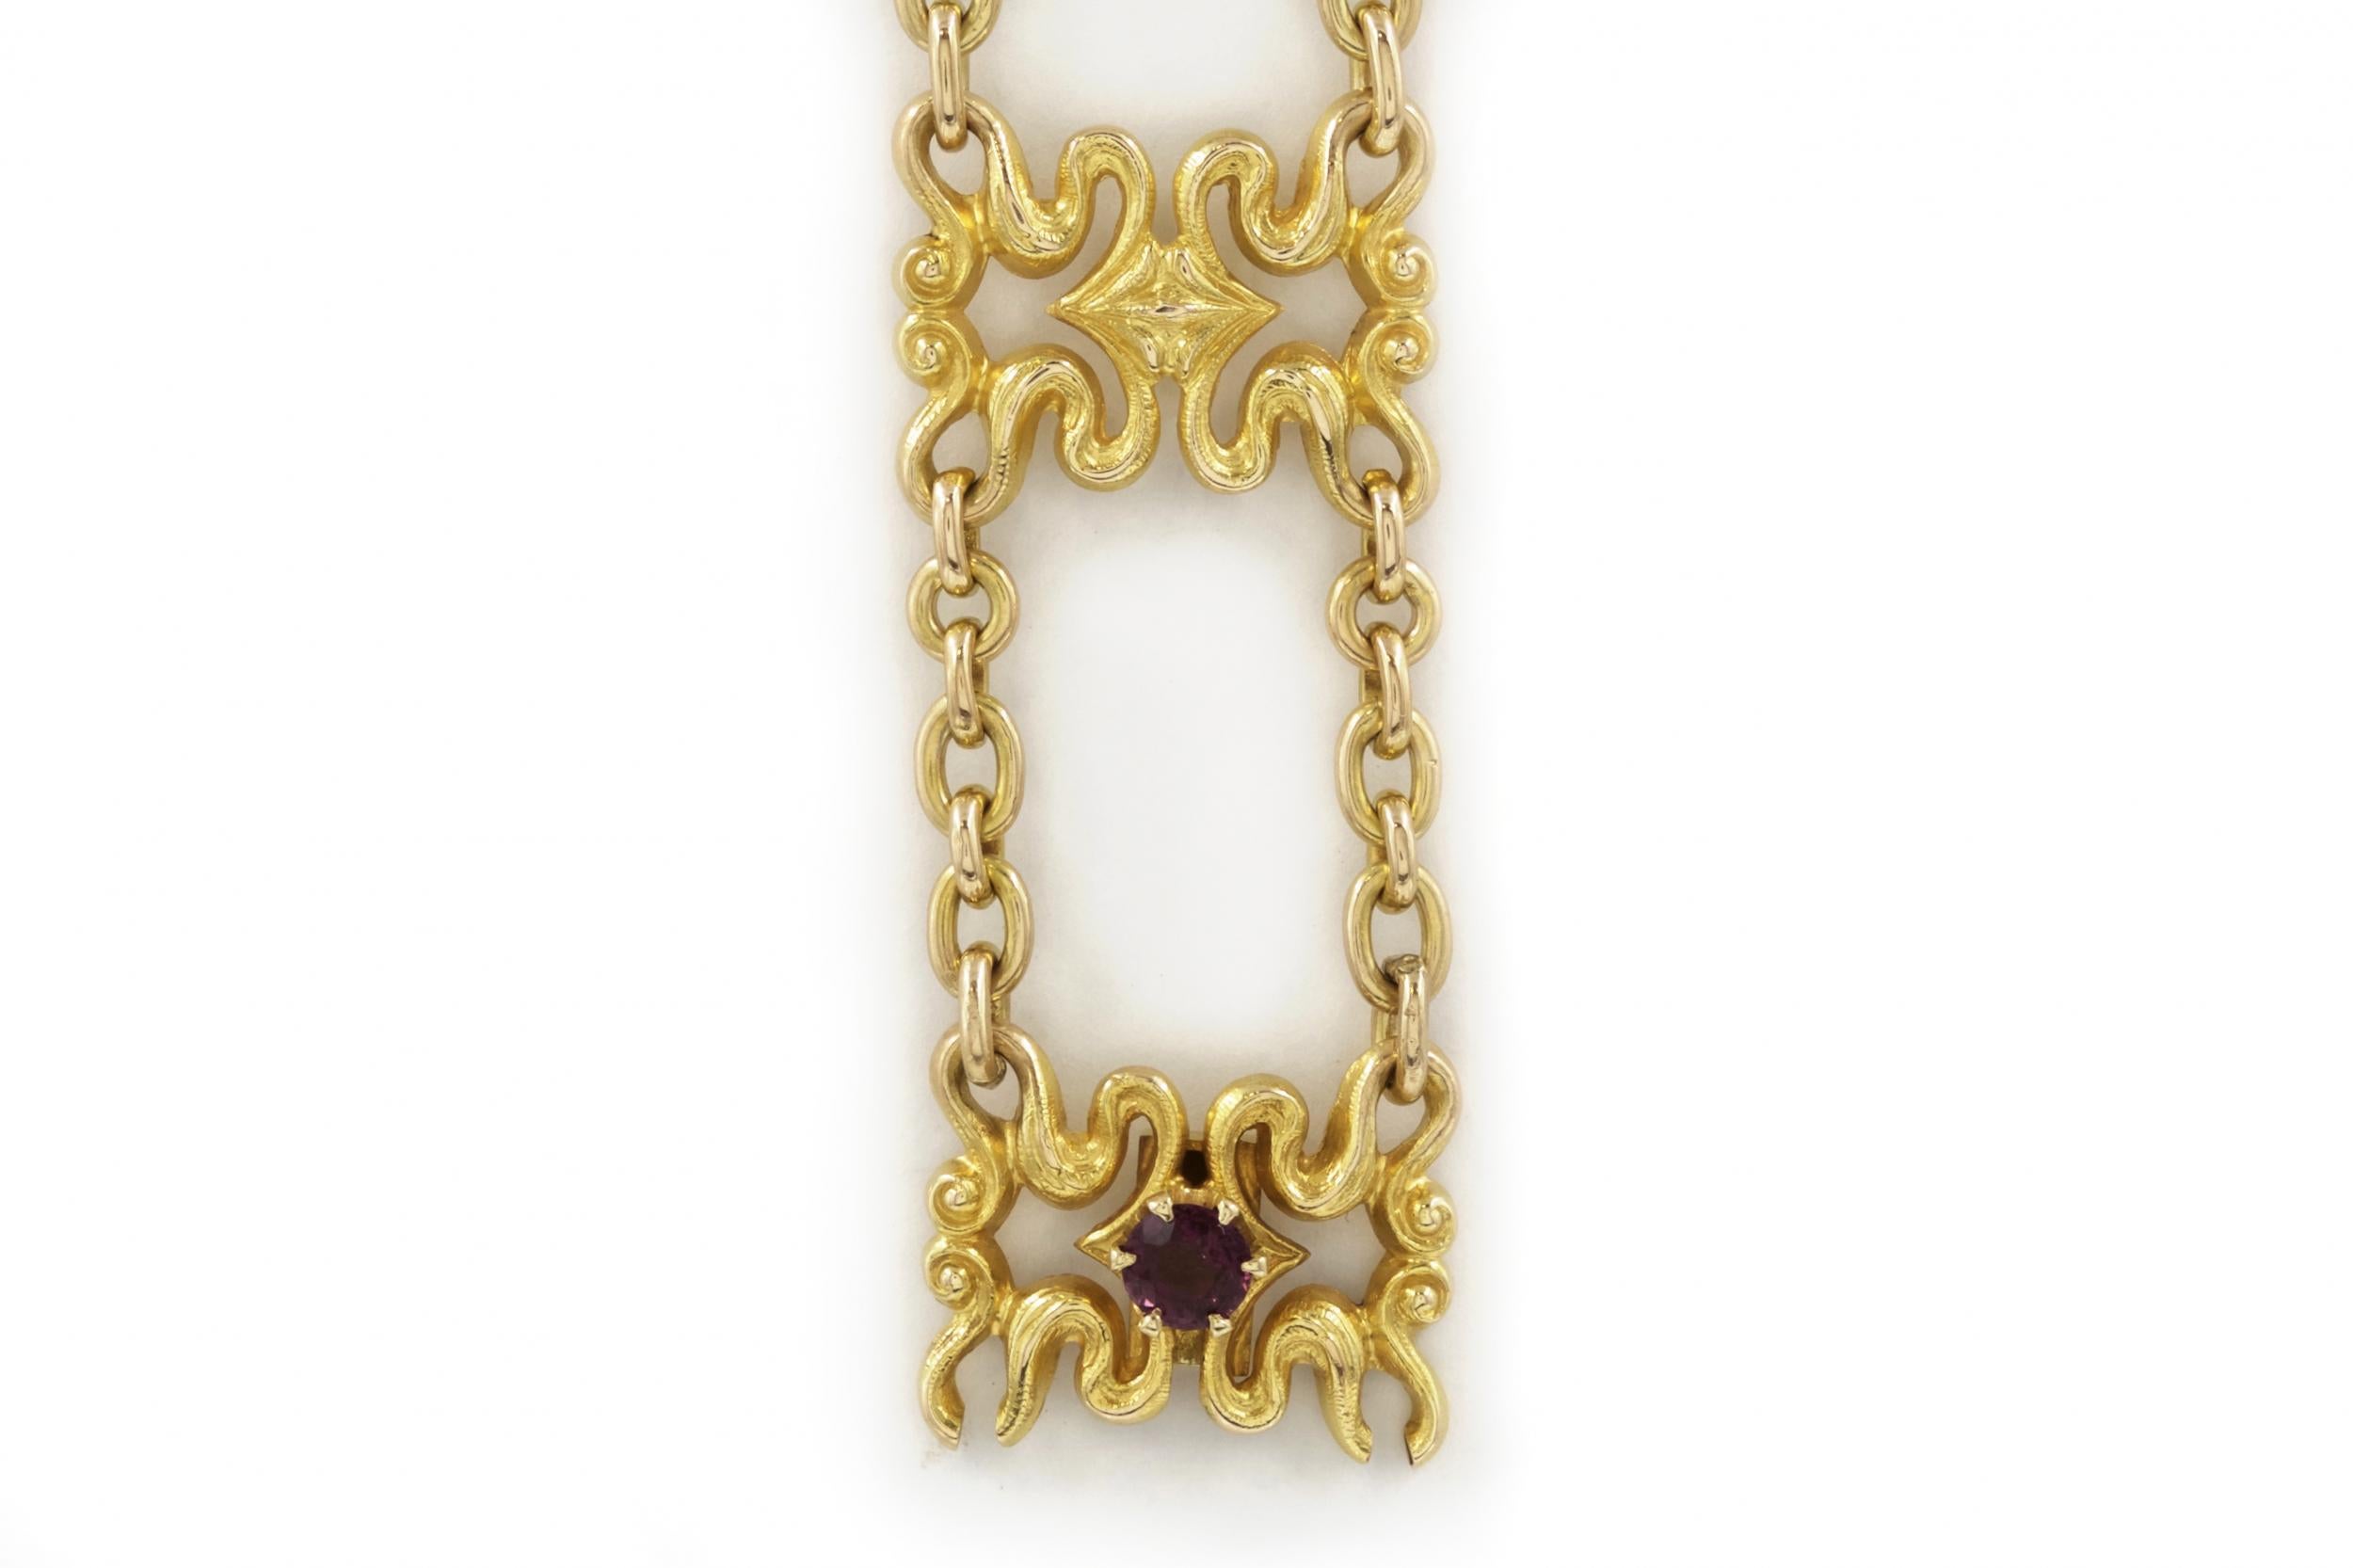 20th Century Art Nouveau 14K Yellow Gold Strap Bracelet by Sloan & Co.